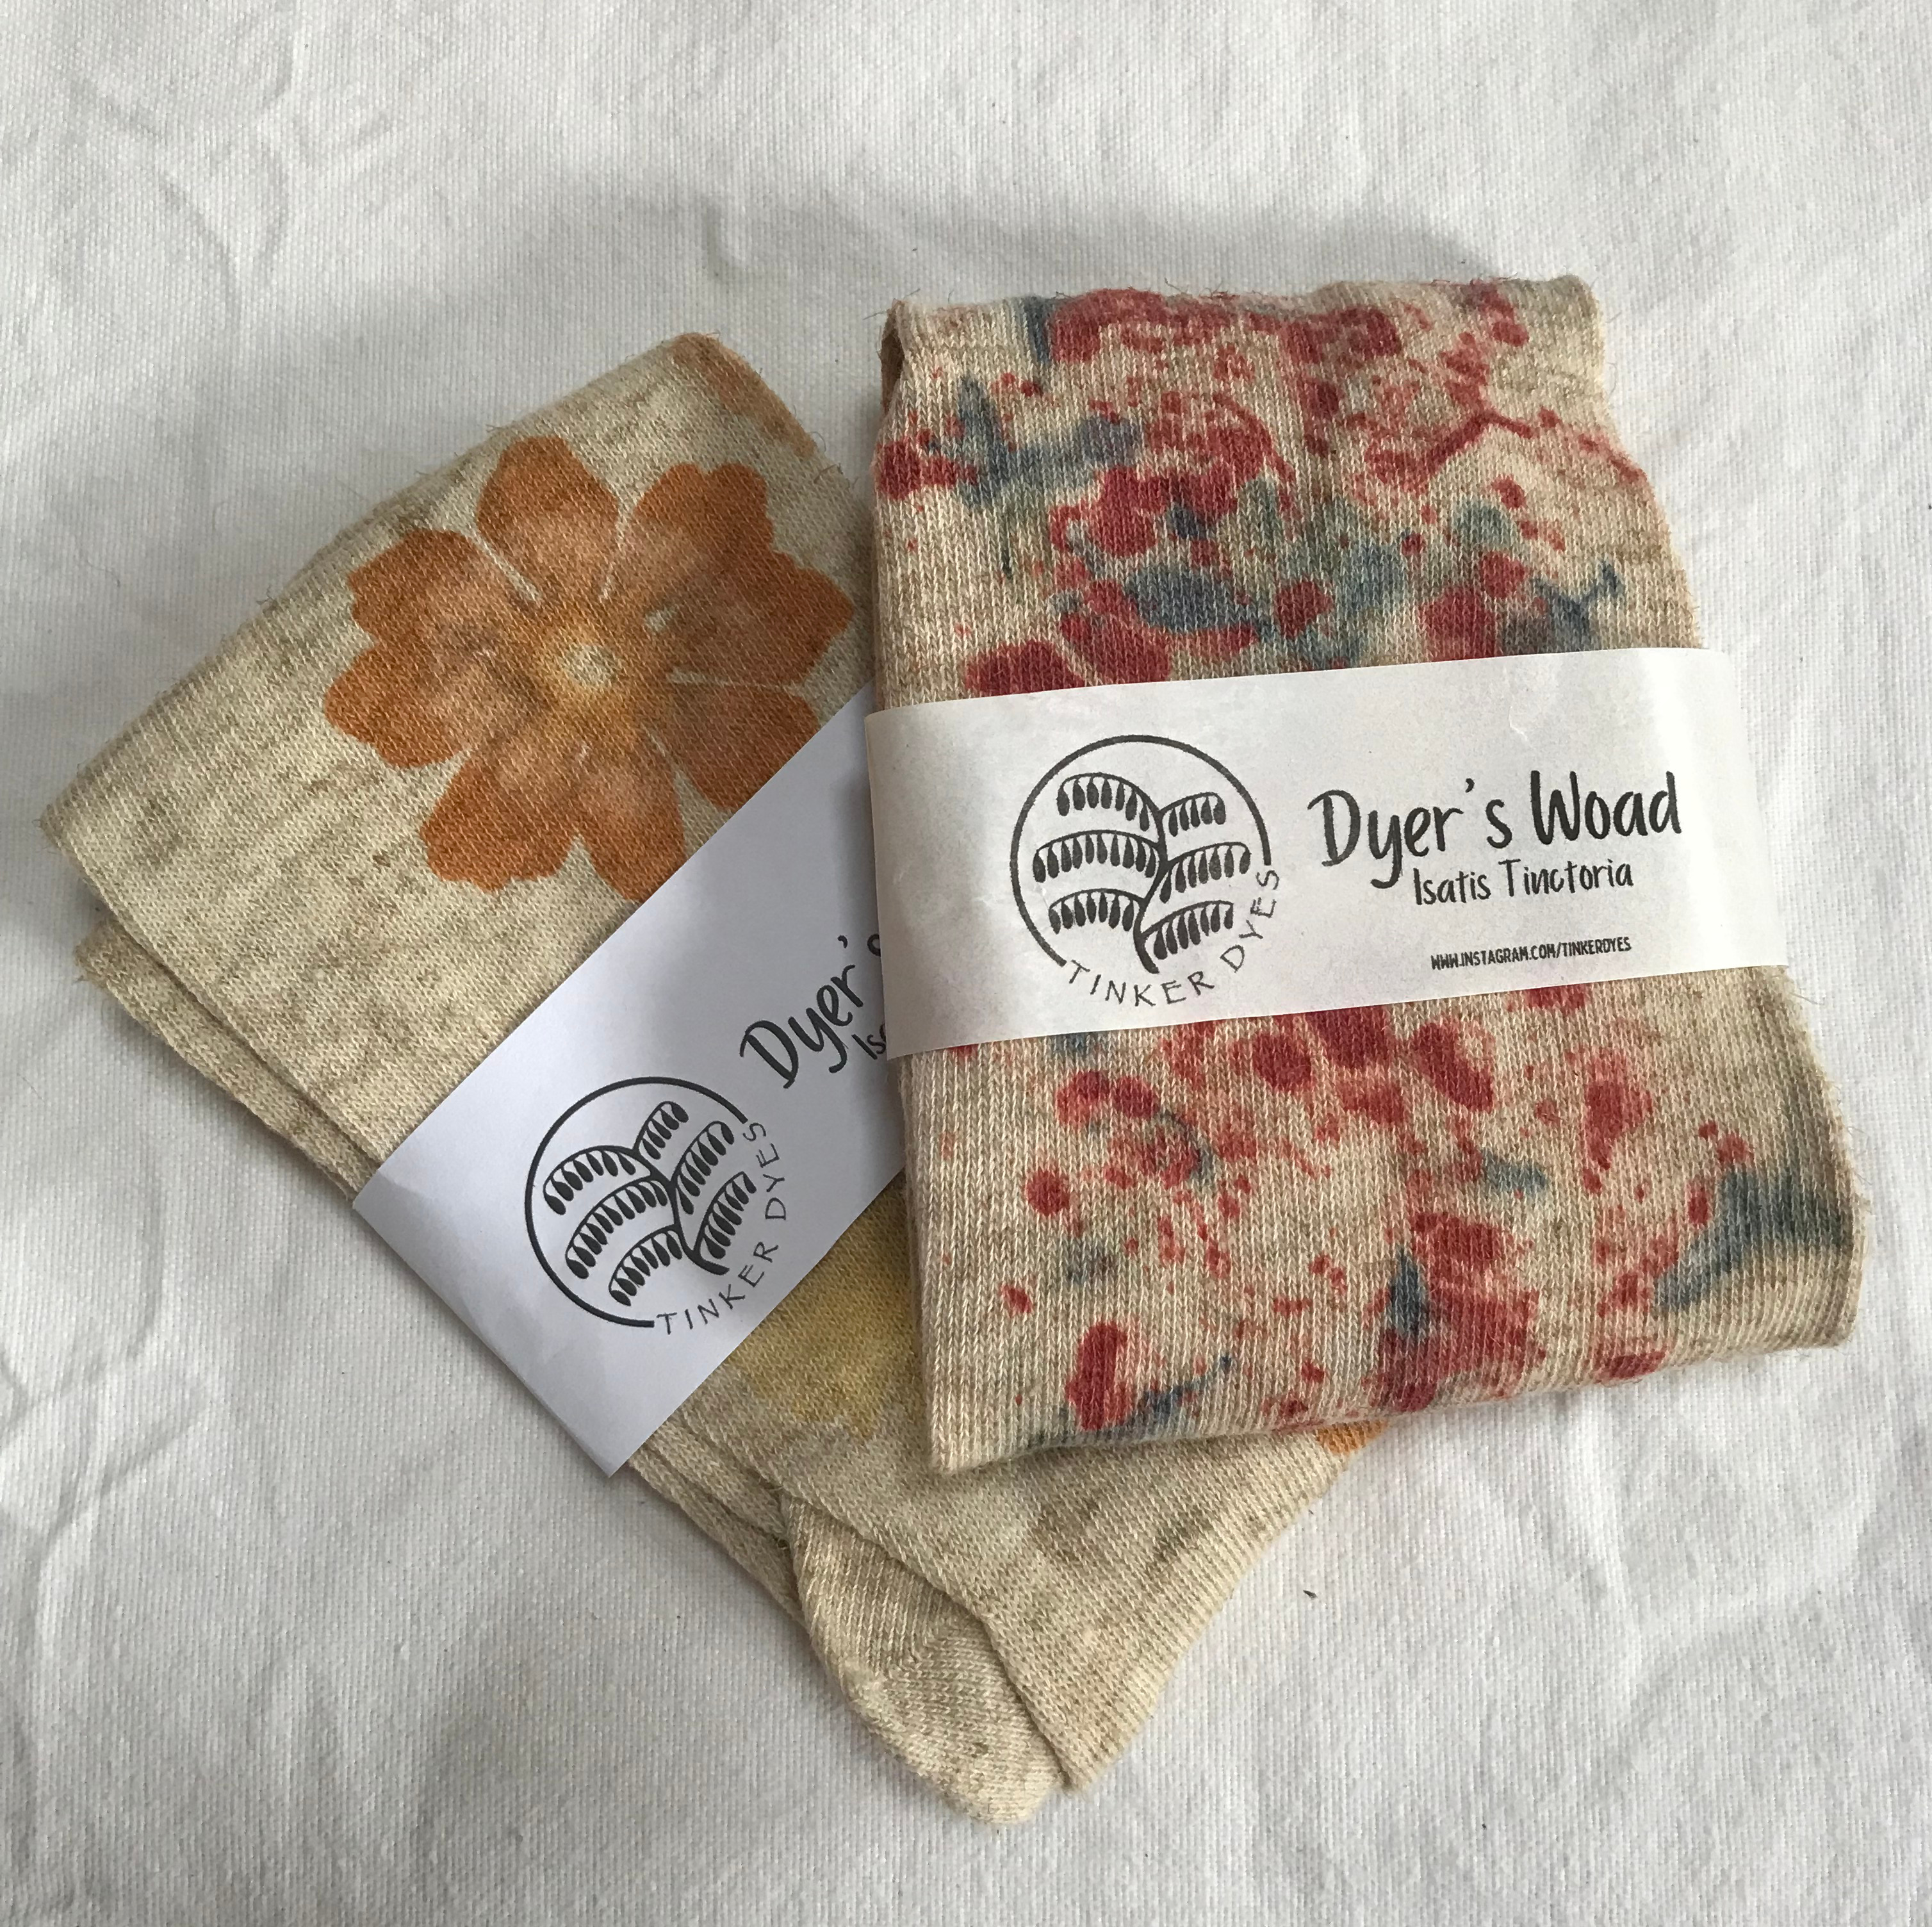 naturally dyed socks clothing natural dye materials cornwall woad seed